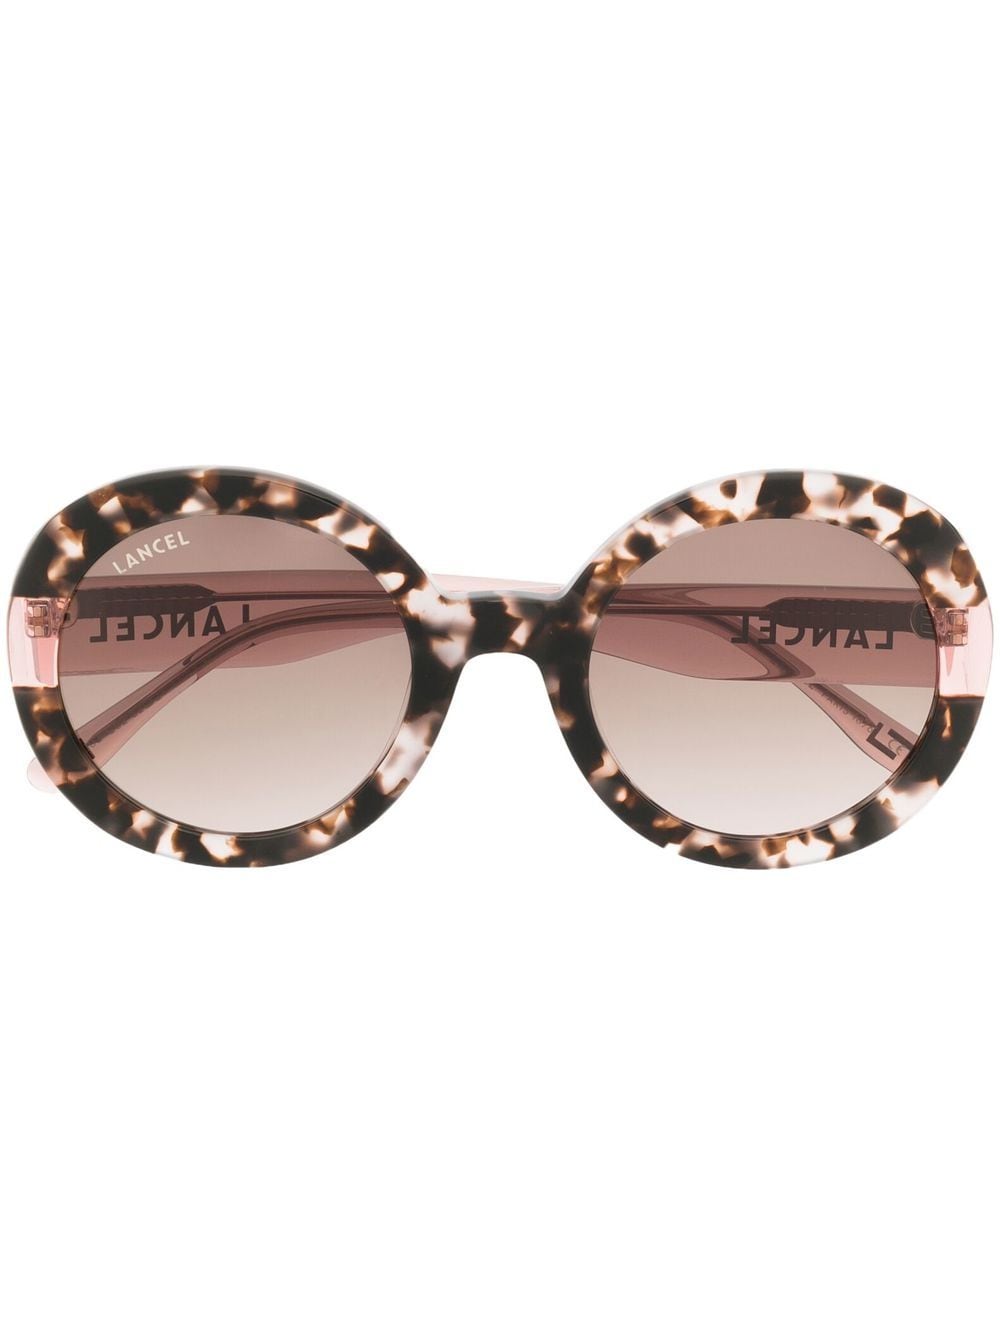 Lancel tortoiseshell-effect round-frame sunglasses - Pink von Lancel